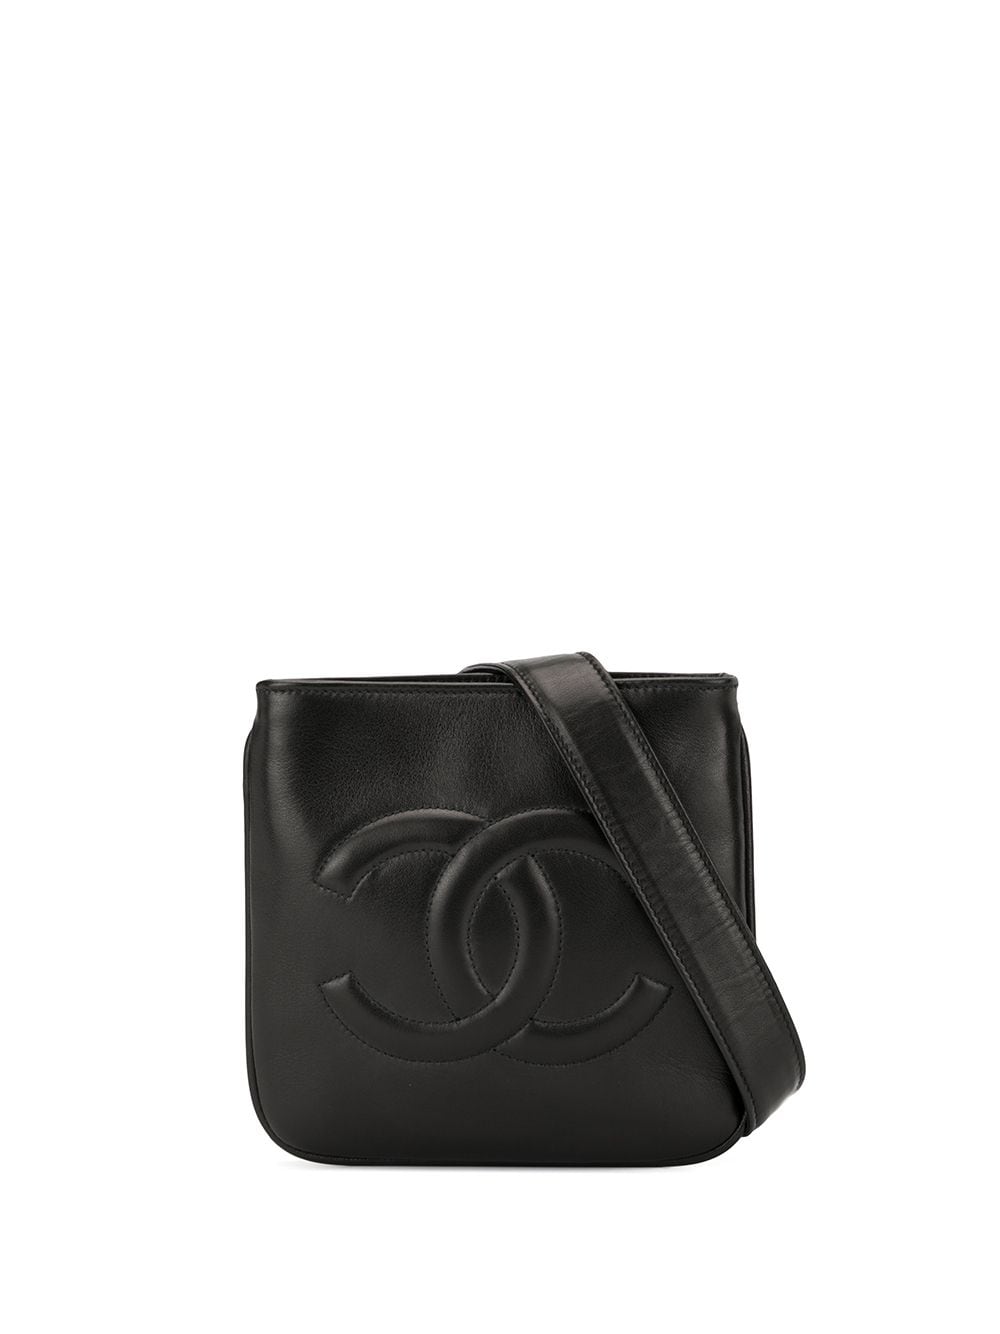 фото Chanel pre-owned поясная сумка с логотипом cc